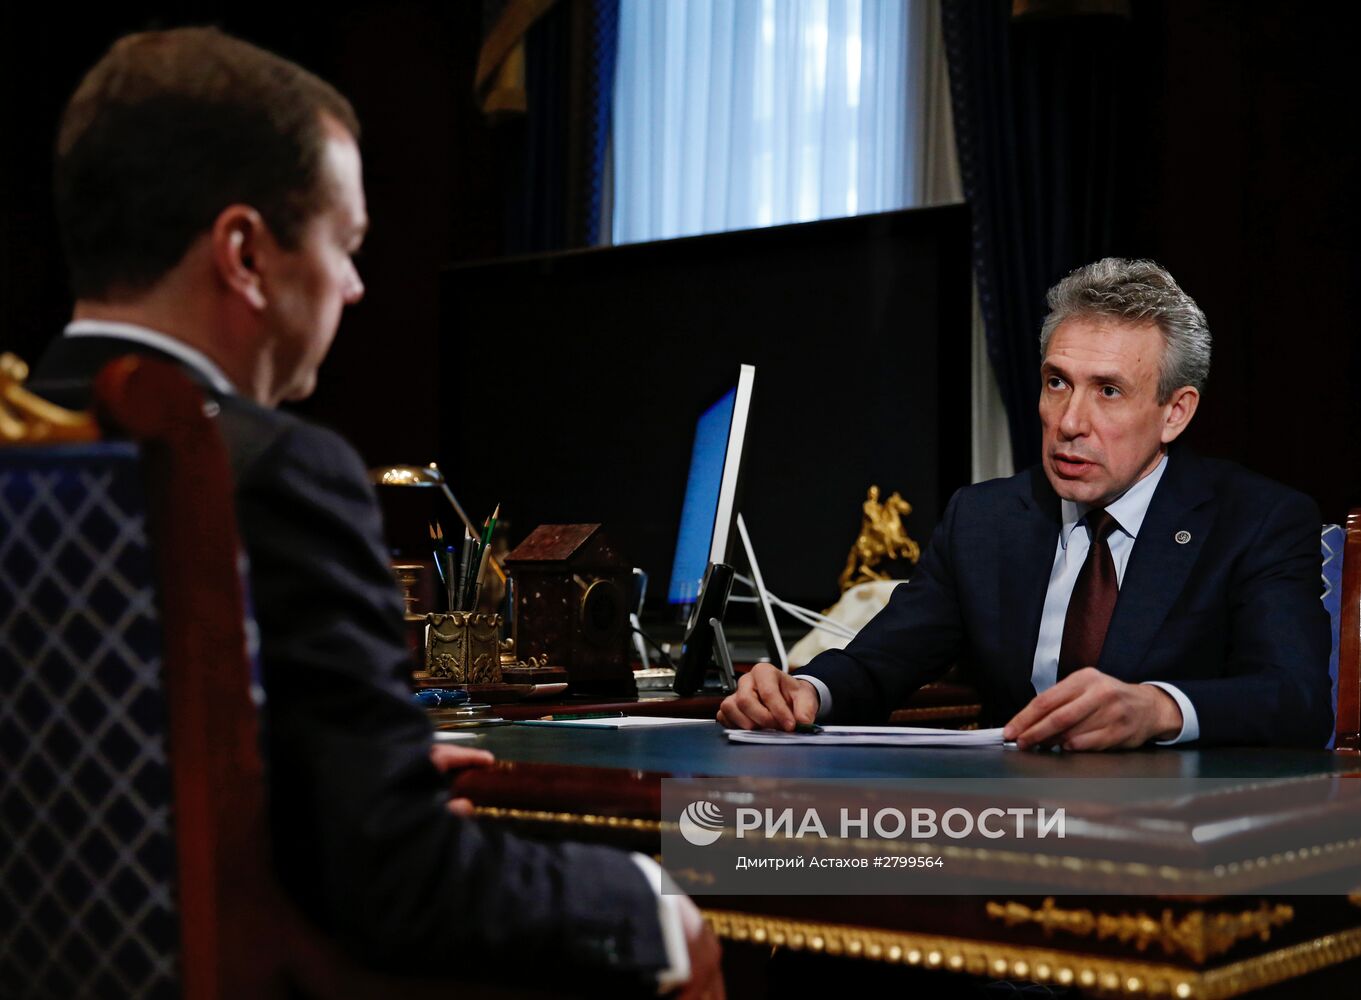 Рабочая встреча премьер-министра РФ Д. Медведева с председателем ВЭБ С. Горьковым